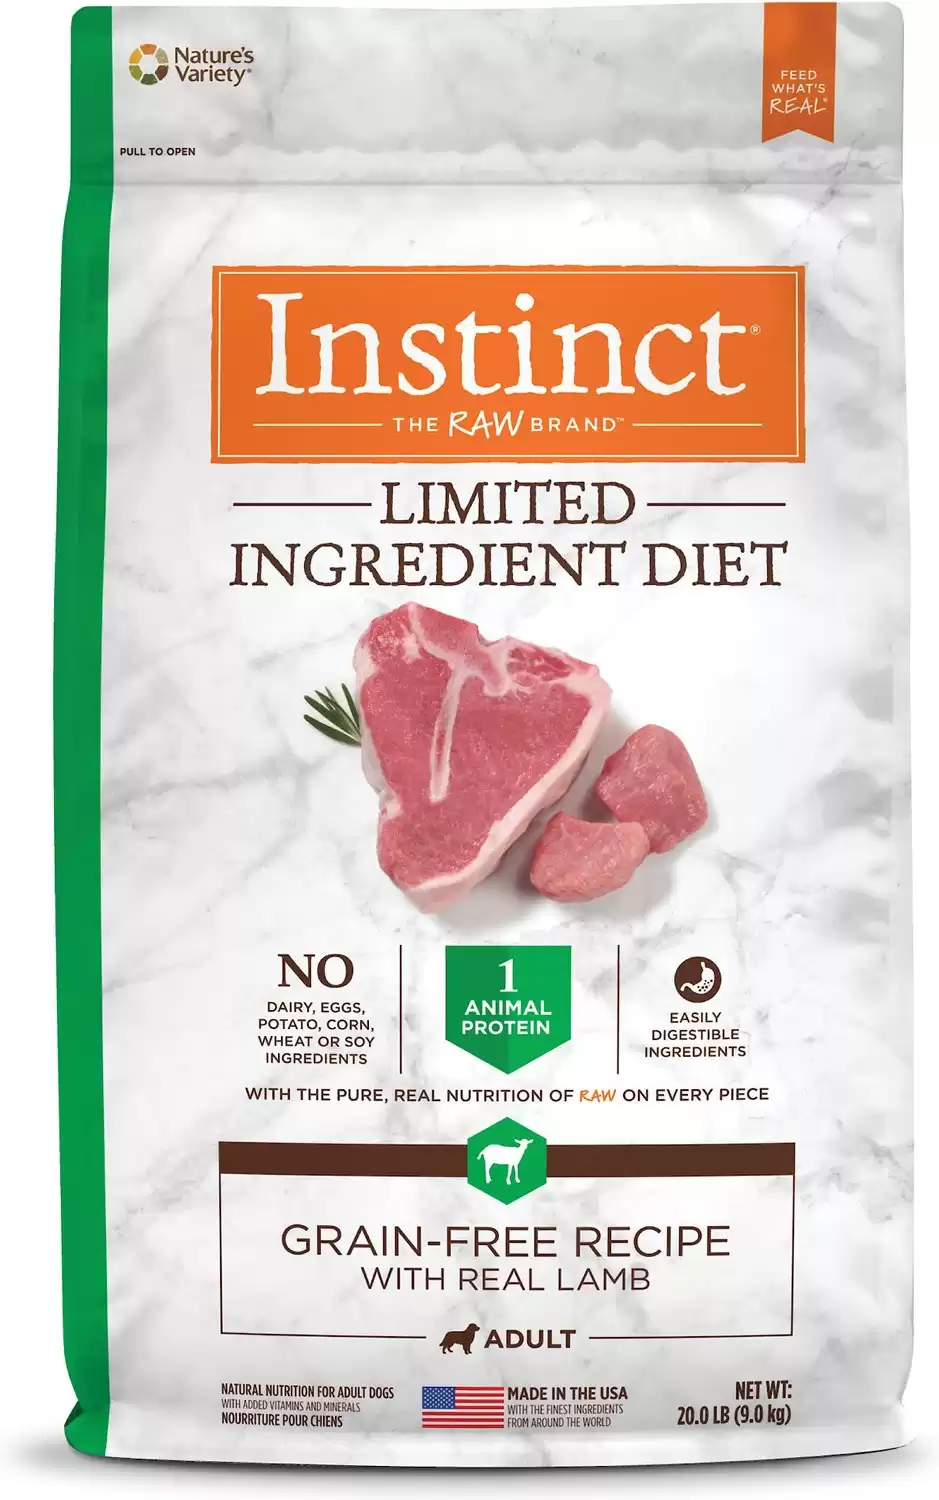 Instinct Dieta de ingredientes limitados Receta sin granos con alimento crudo seco para perros liofilizado de cordero real